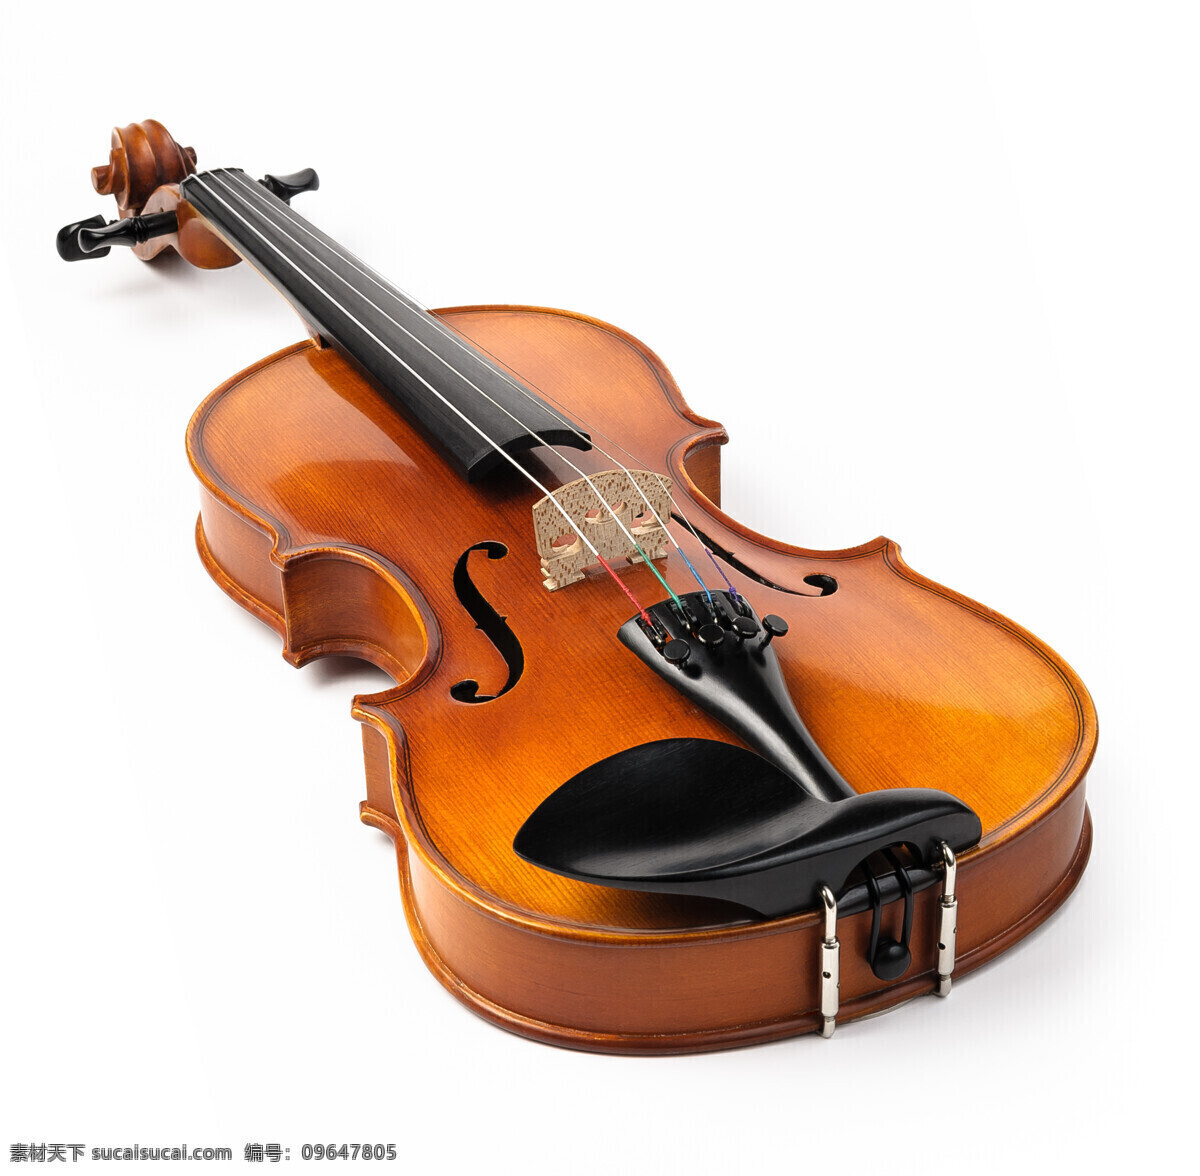 小提琴 音乐器材 乐器 西洋乐器 影音娱乐 生活百科